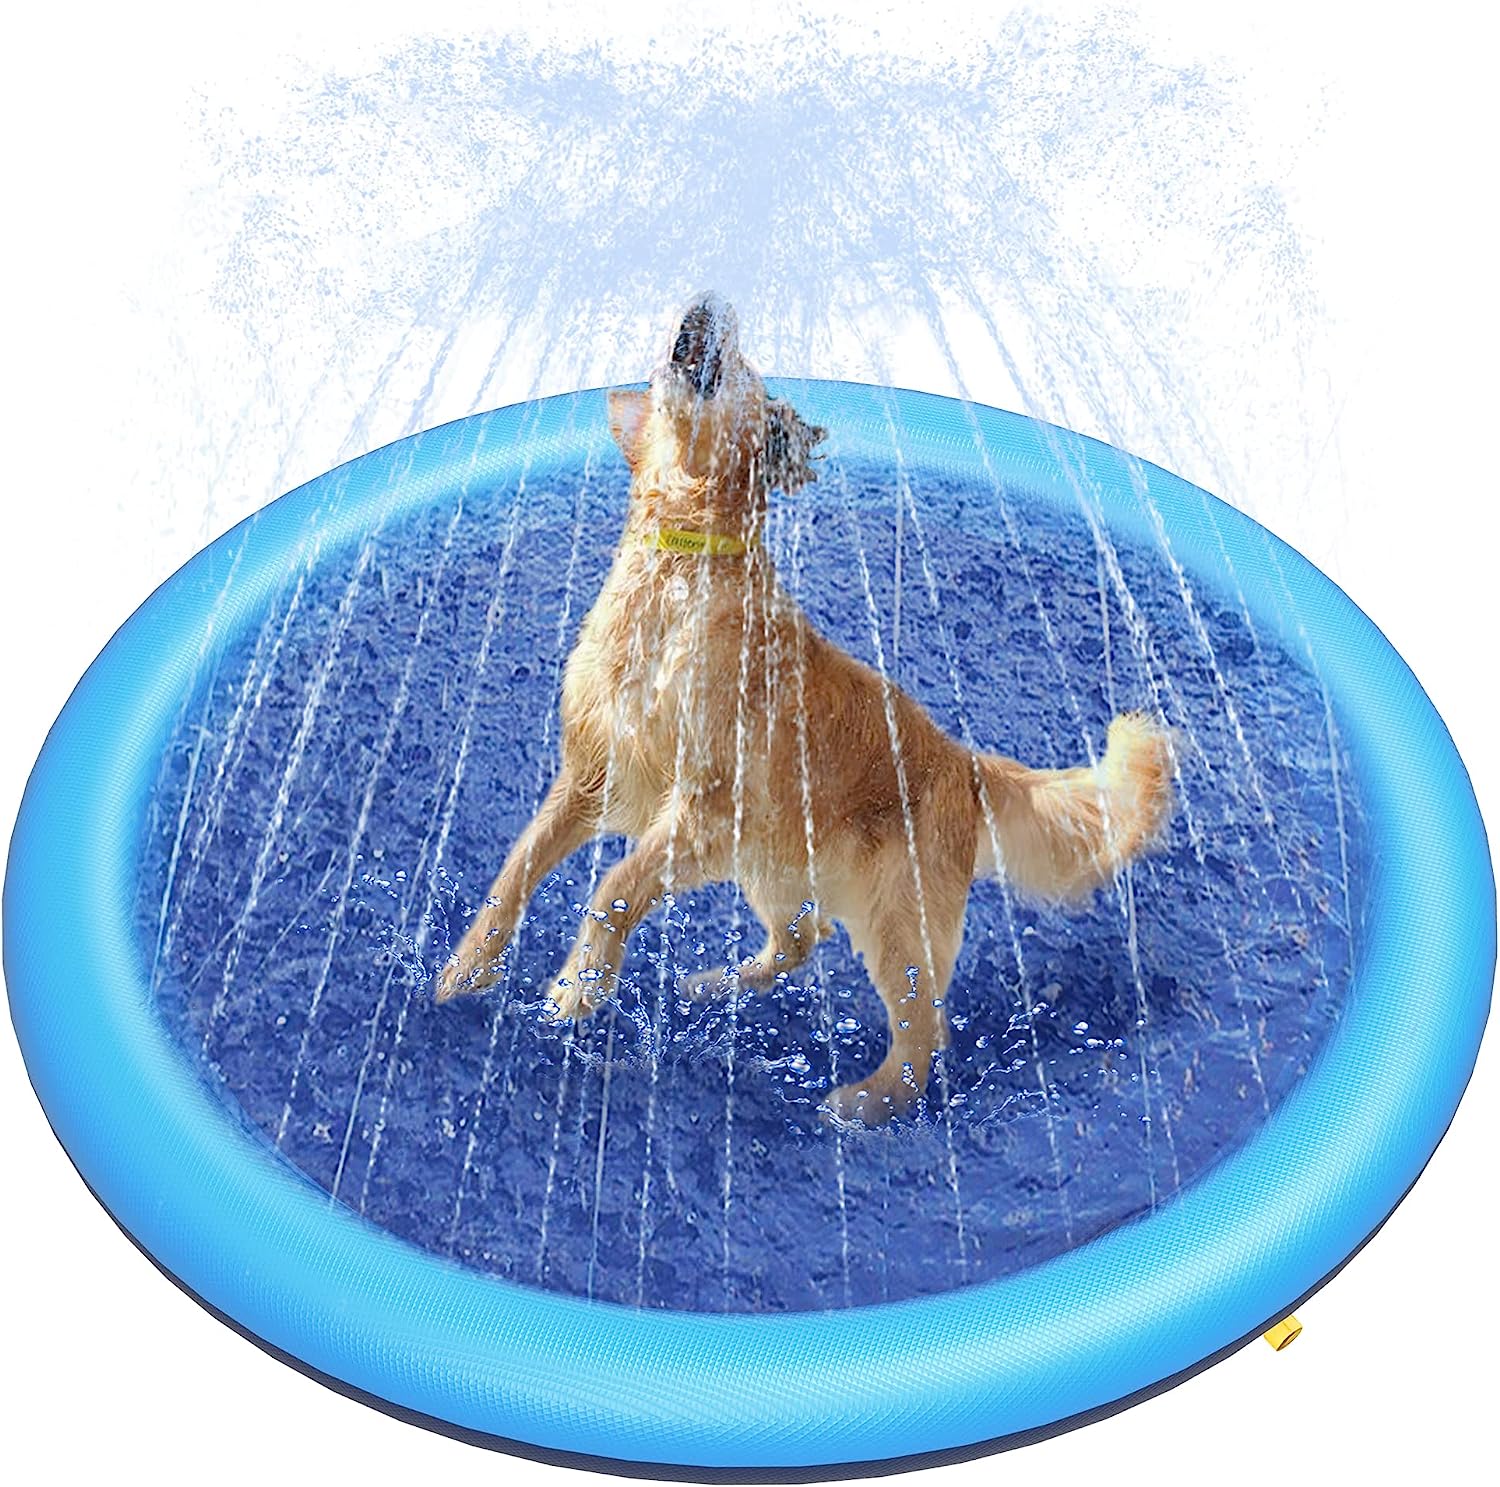 6. Peteast Dog Splash Pad